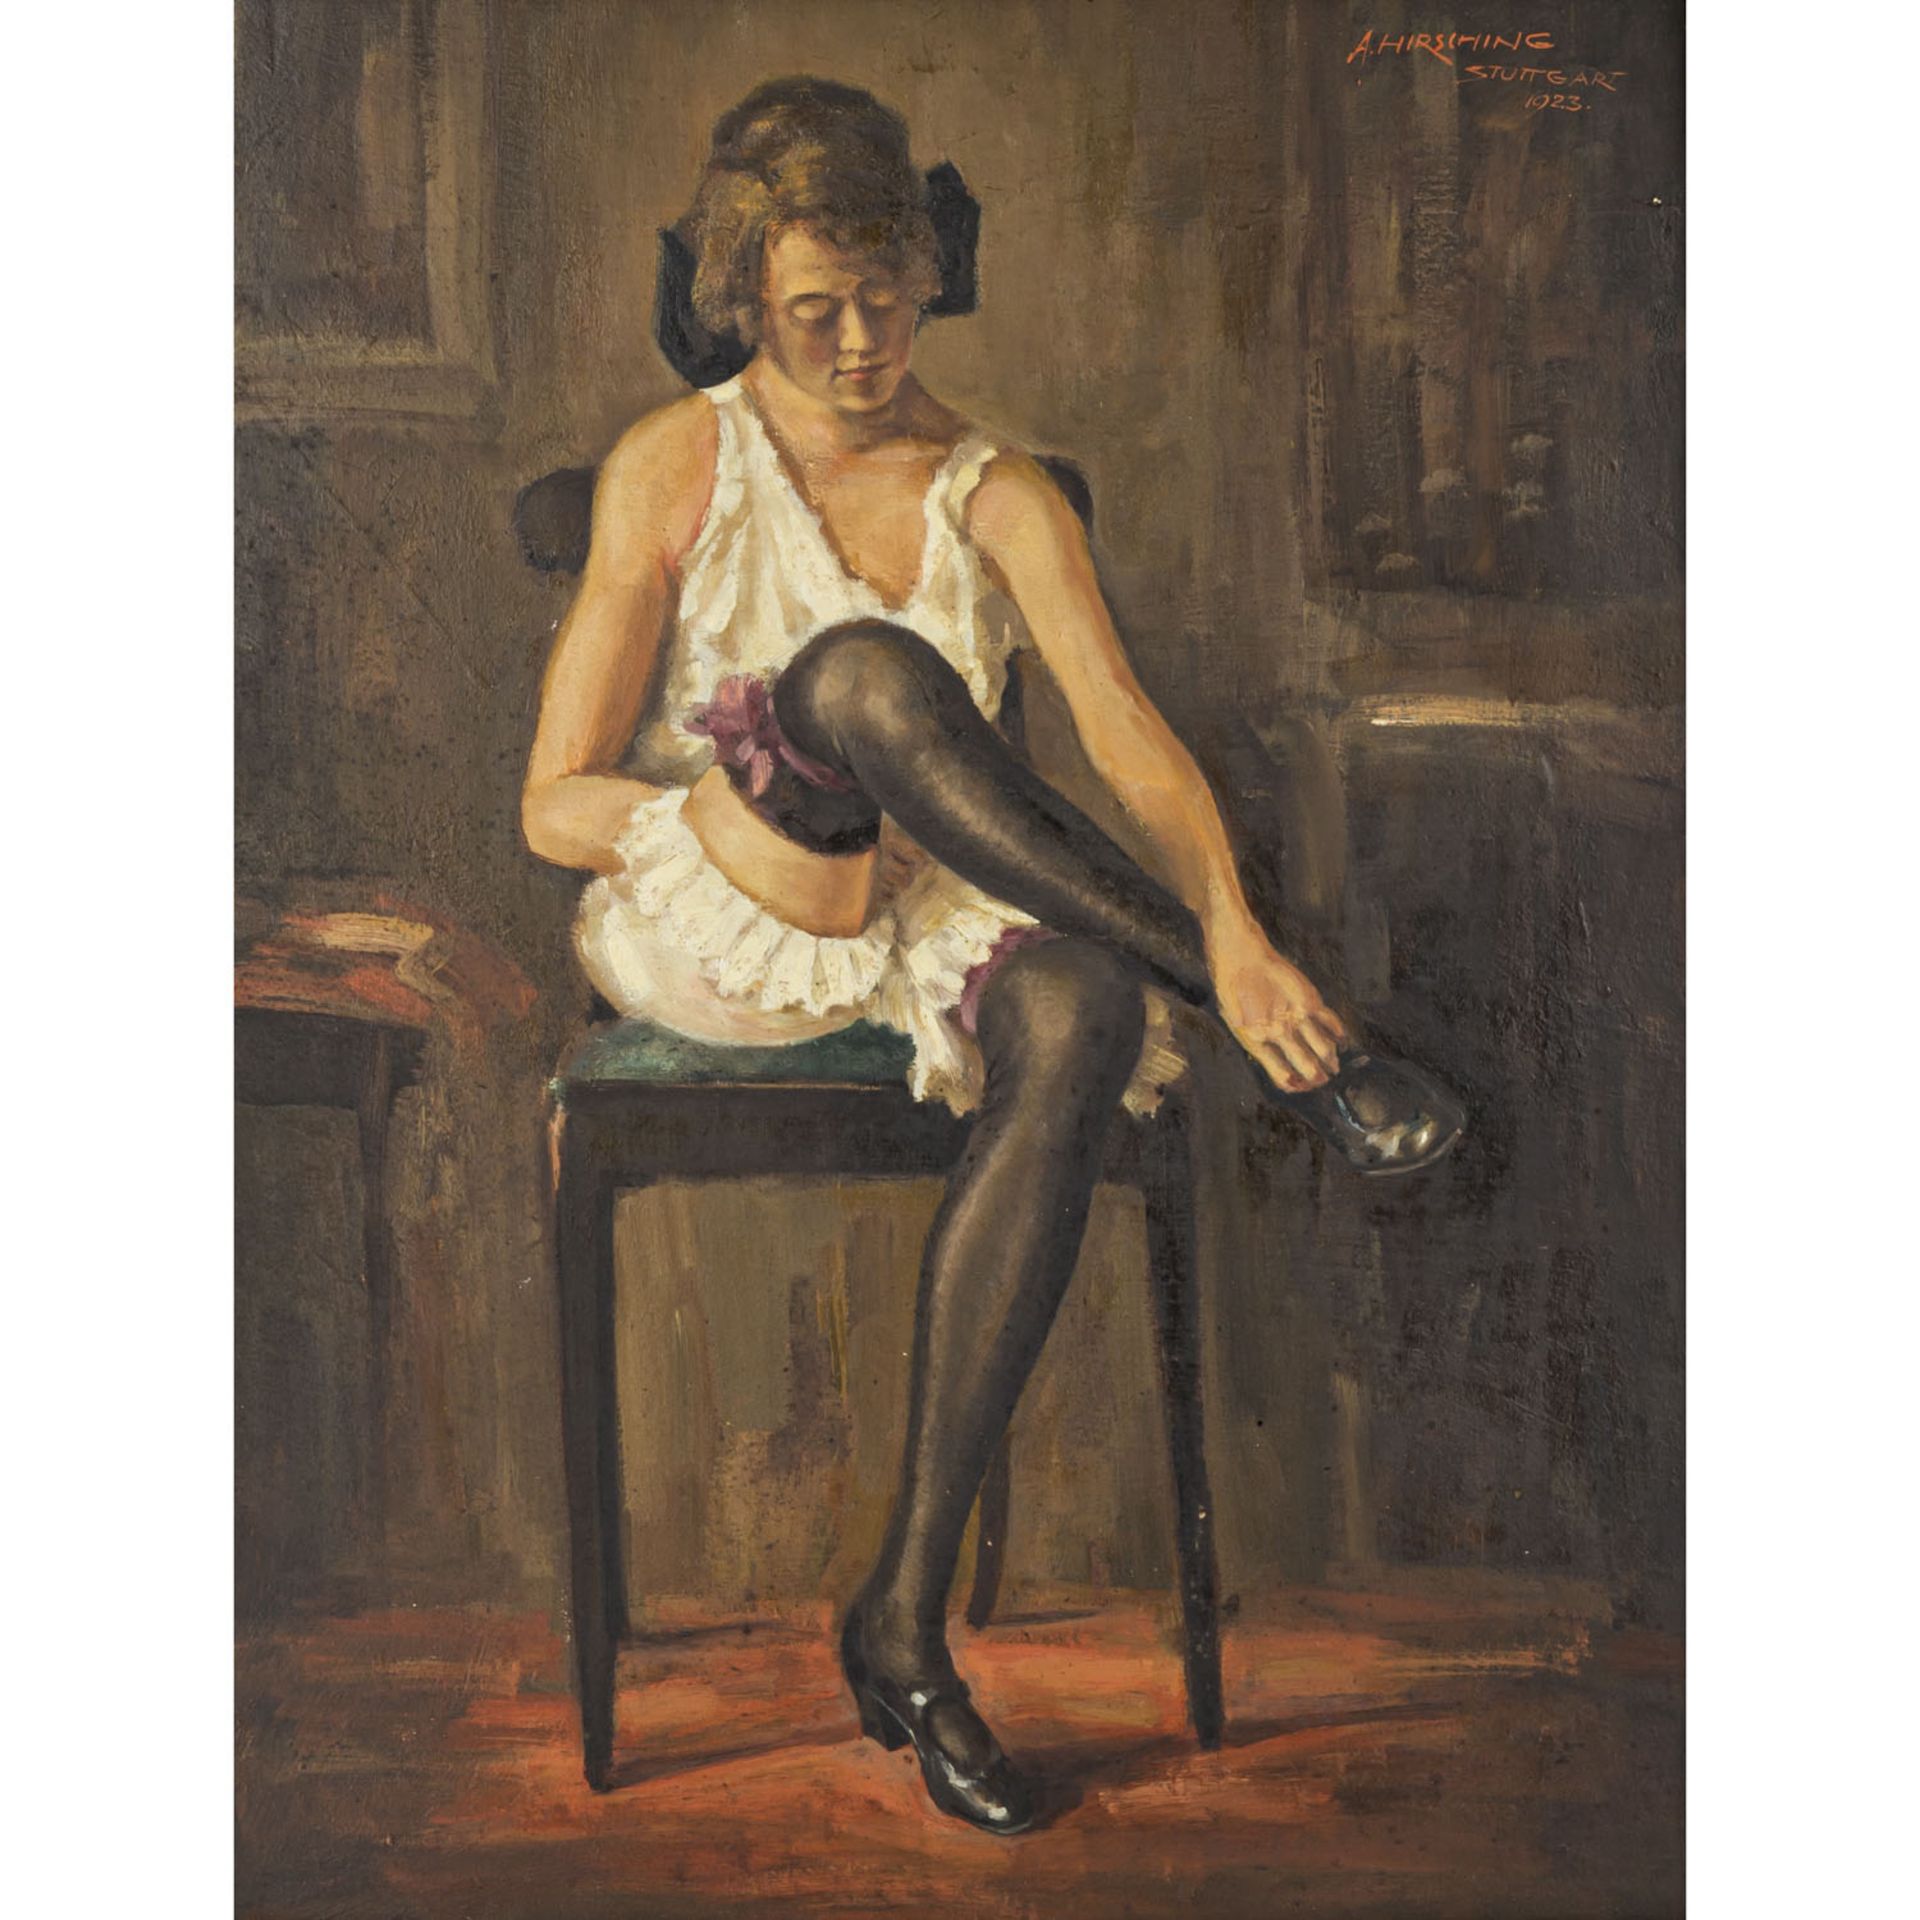 HIRSCHING, AUGUST (1889-1962), "Beim Ausziehen",junge Frau beim Auskleiden auf einem Stuhl